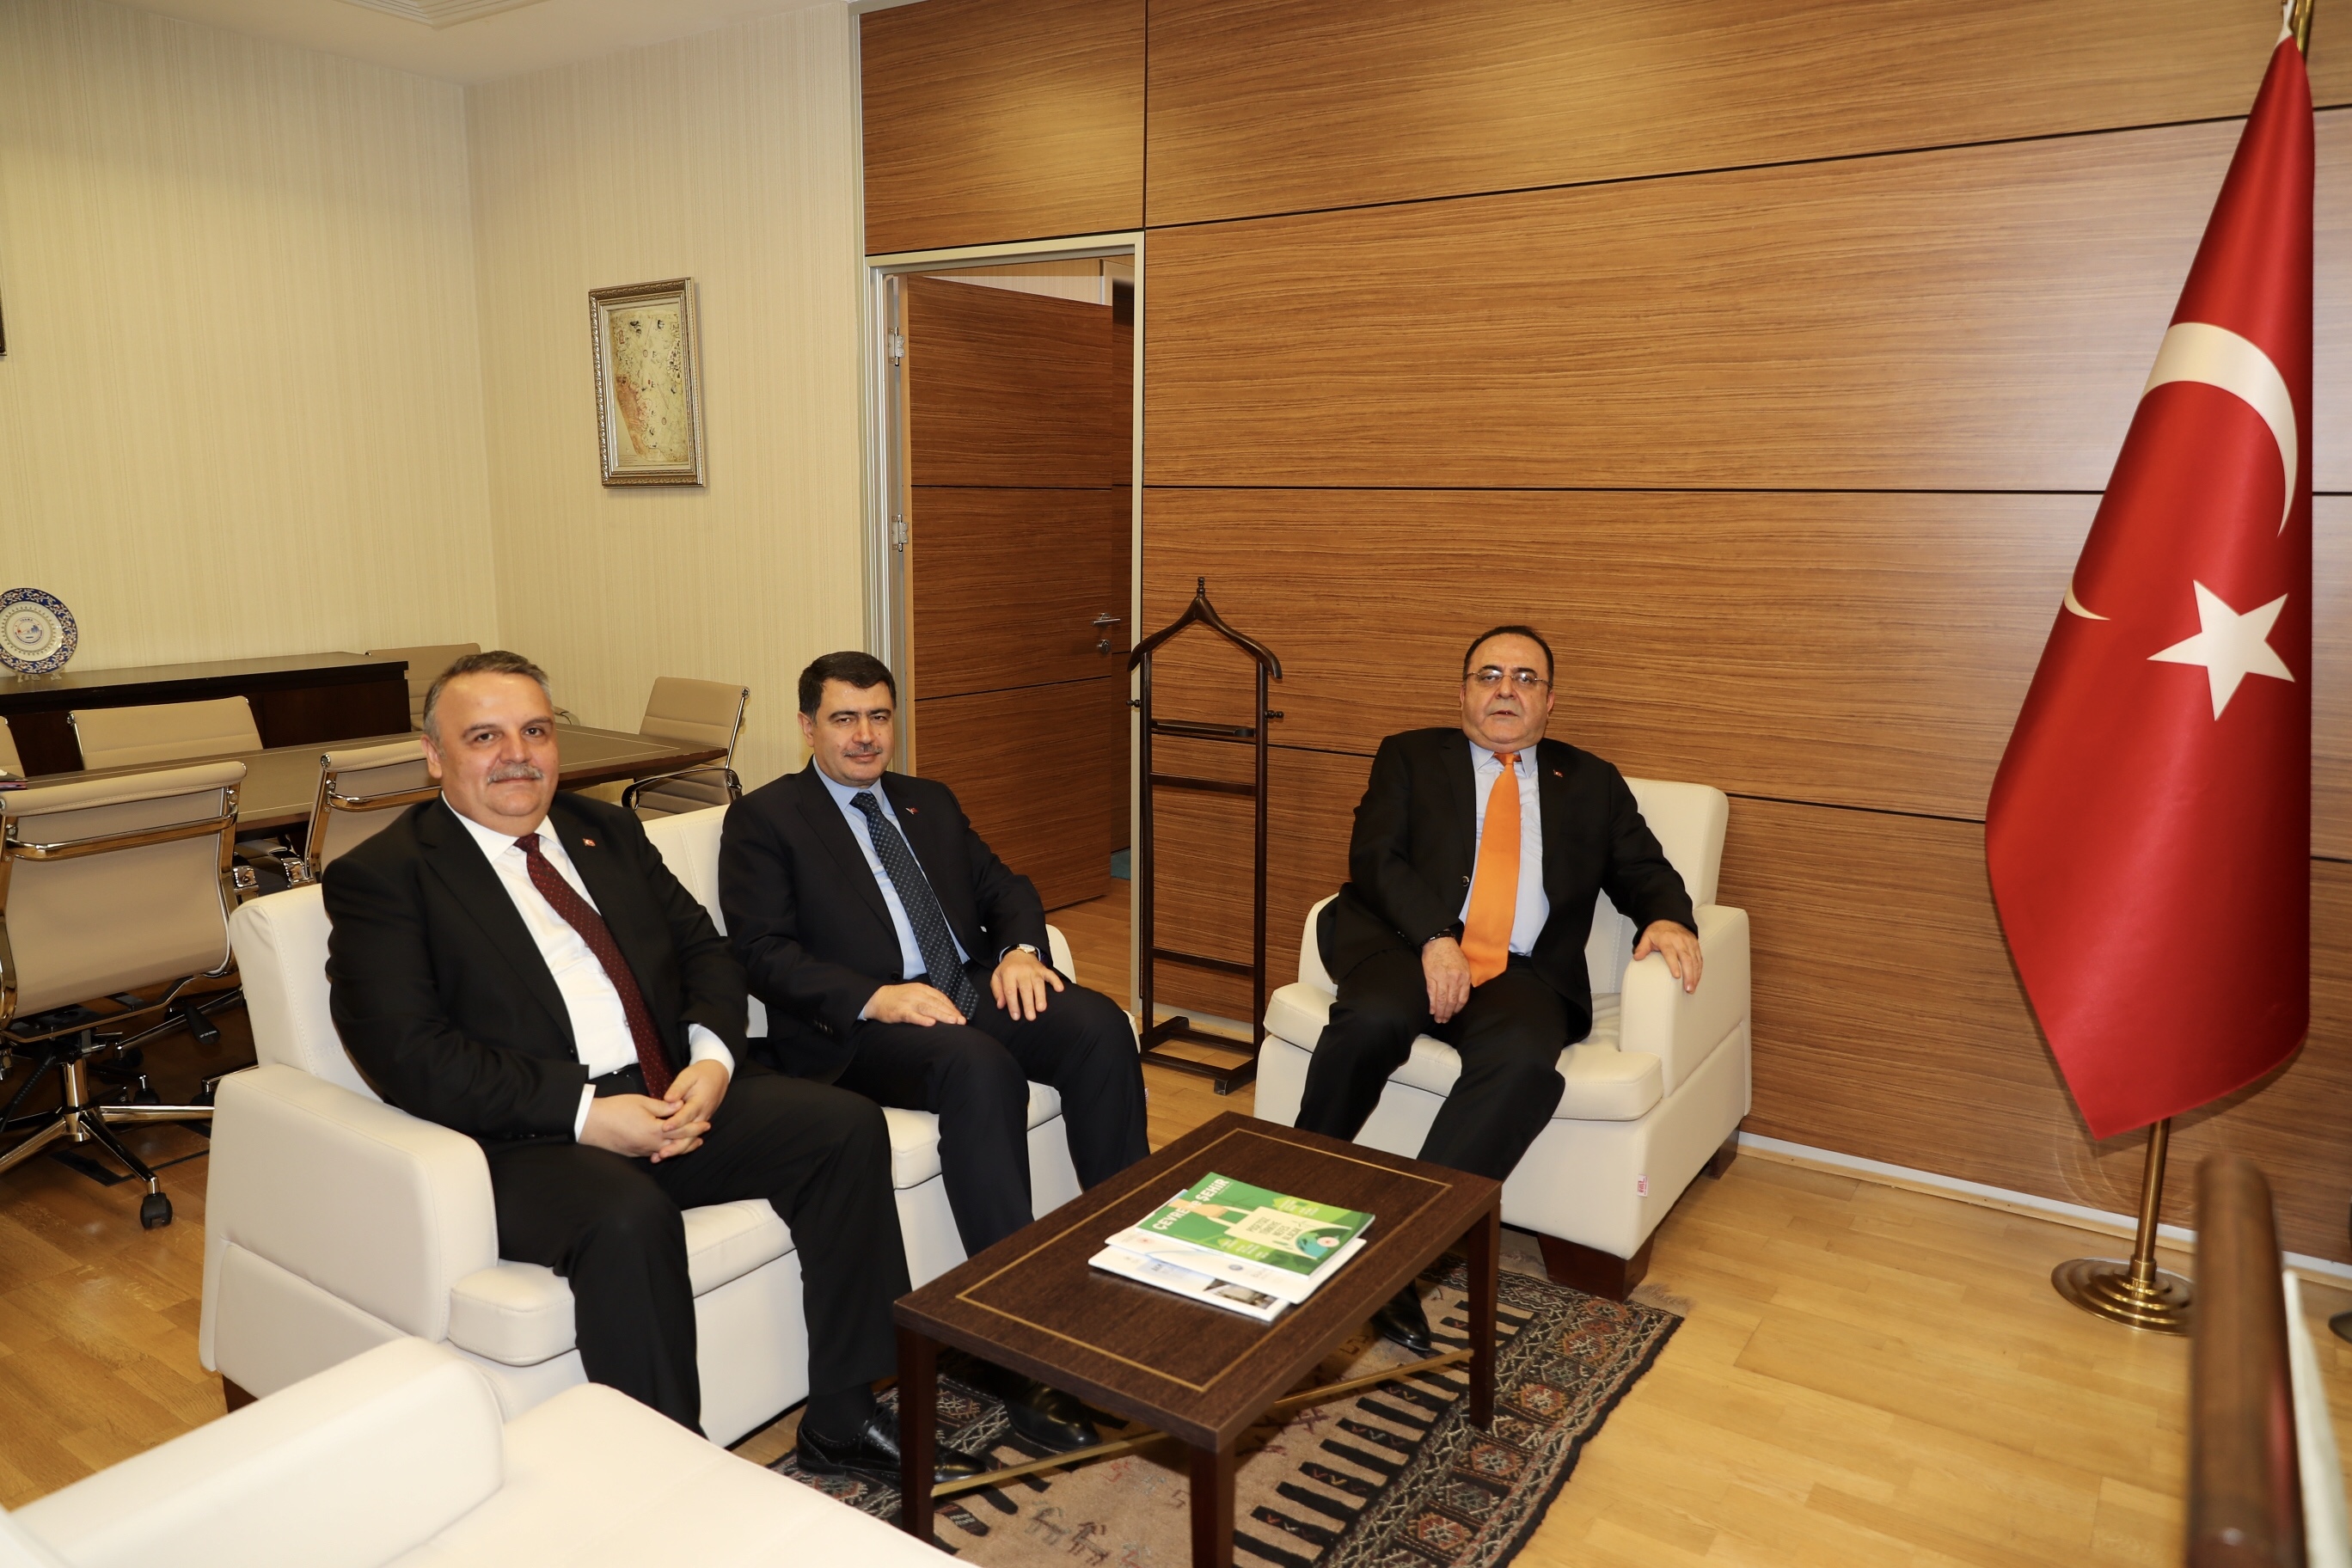 Sayın Ankara Valisi Vasip ŞAHİN, Sayın Başkanımız İhsan YİĞİT’i Çalışma Ziyaretinde Bulunmuştur.